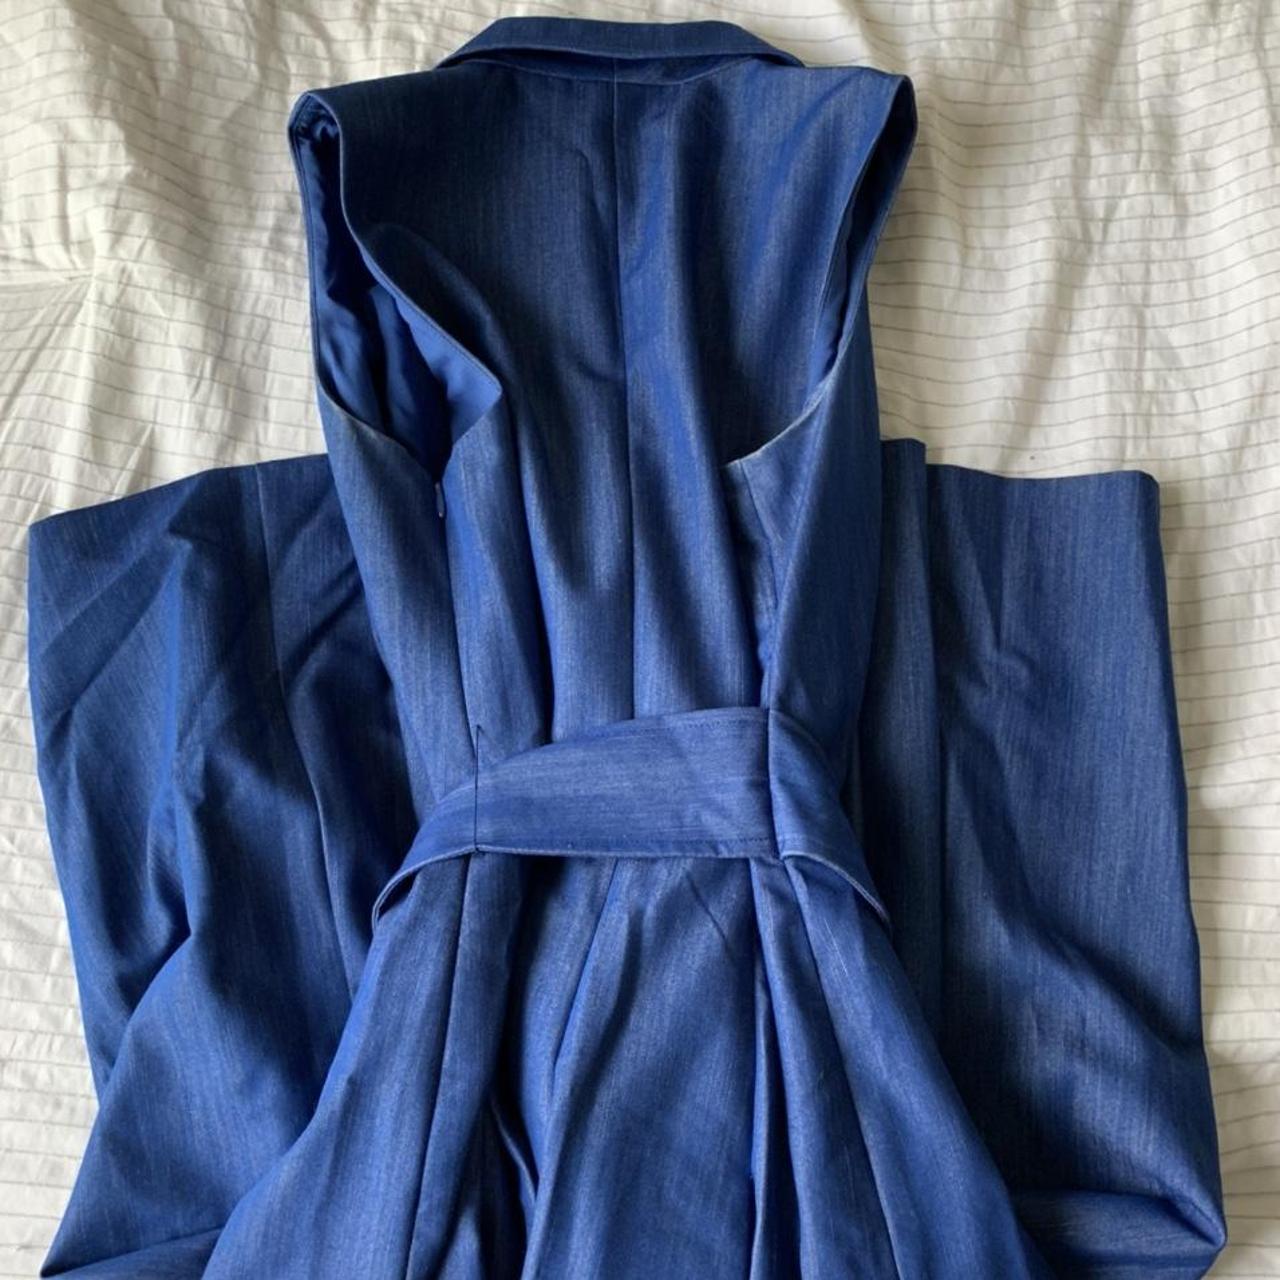 Anne Klein Women's Navy and Blue Dress (3)